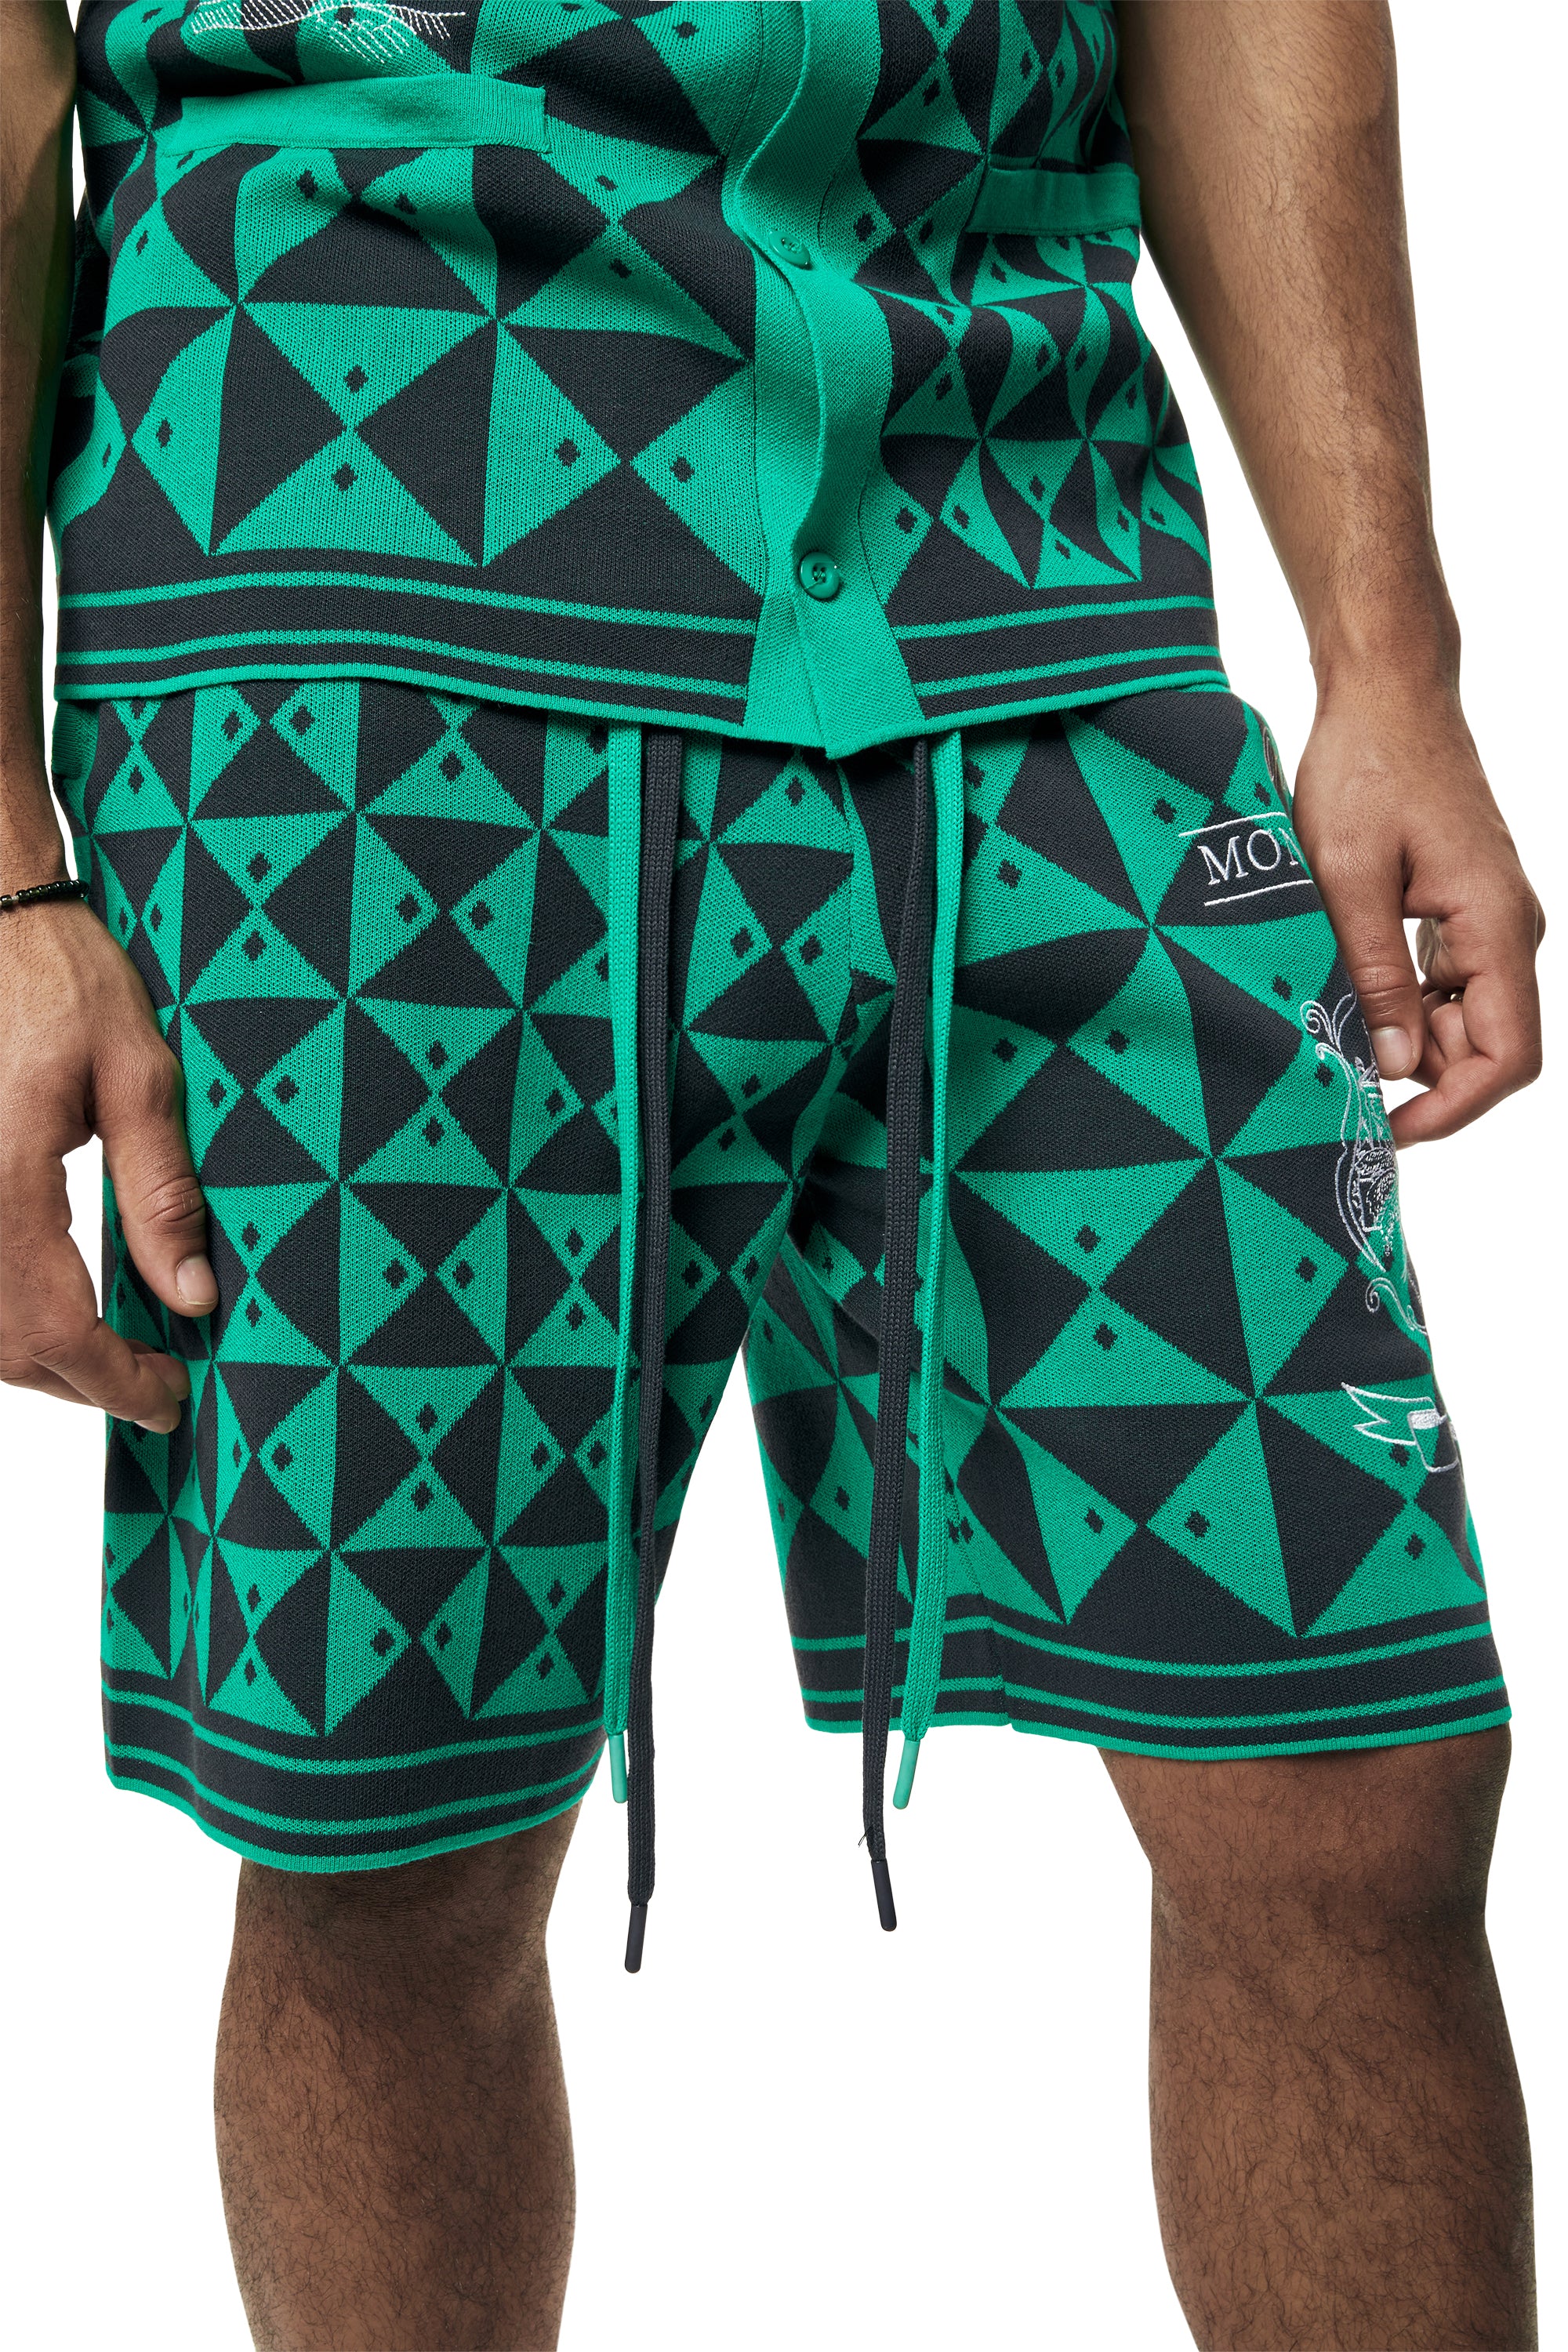 Jacquard Knit Shorts - Green